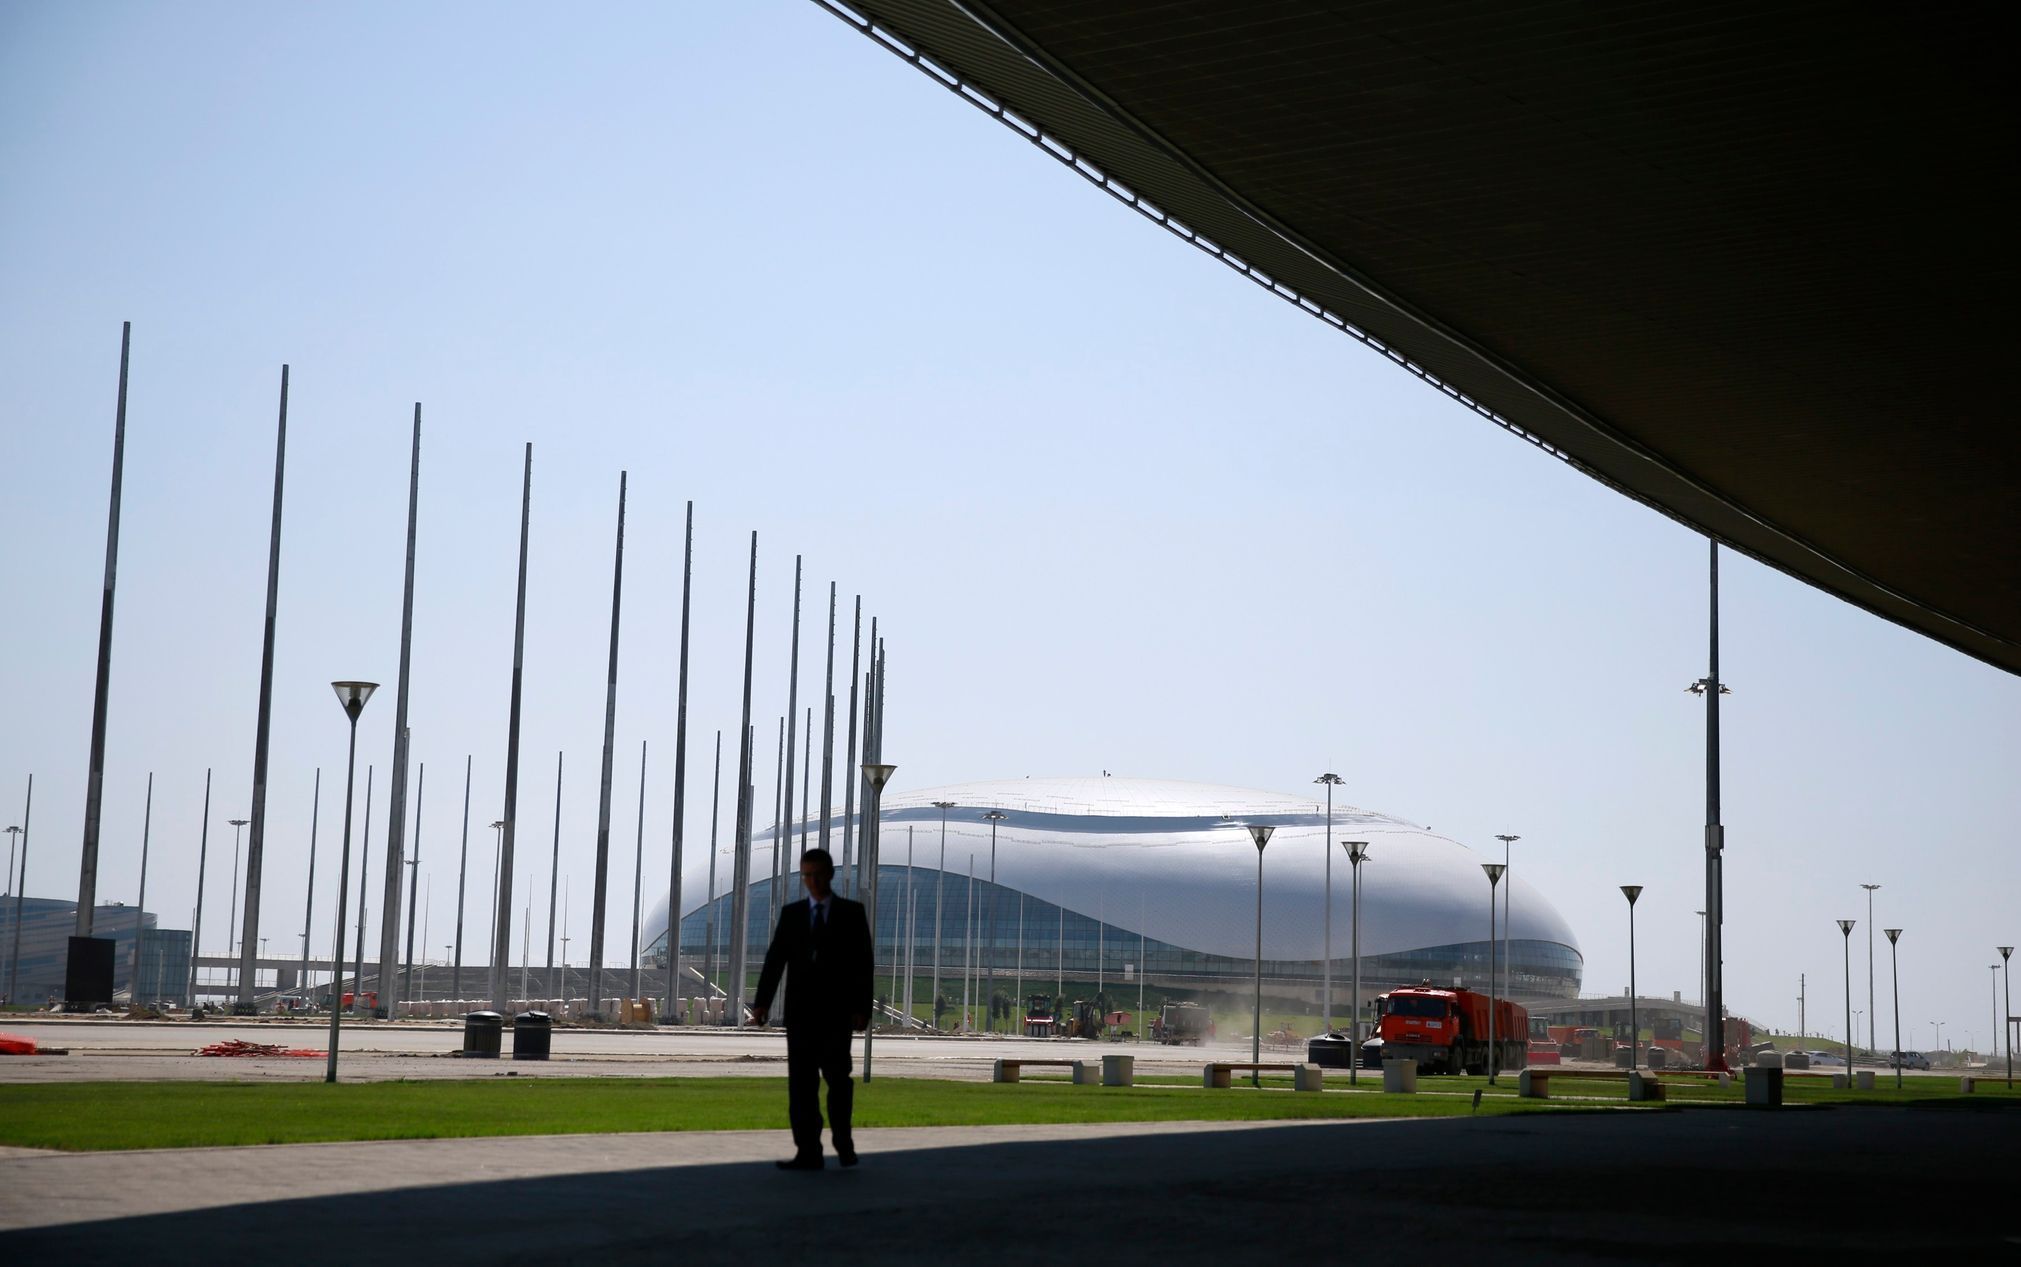 Olympijská sportoviště v Soči (Bolshoy Ice Dome)